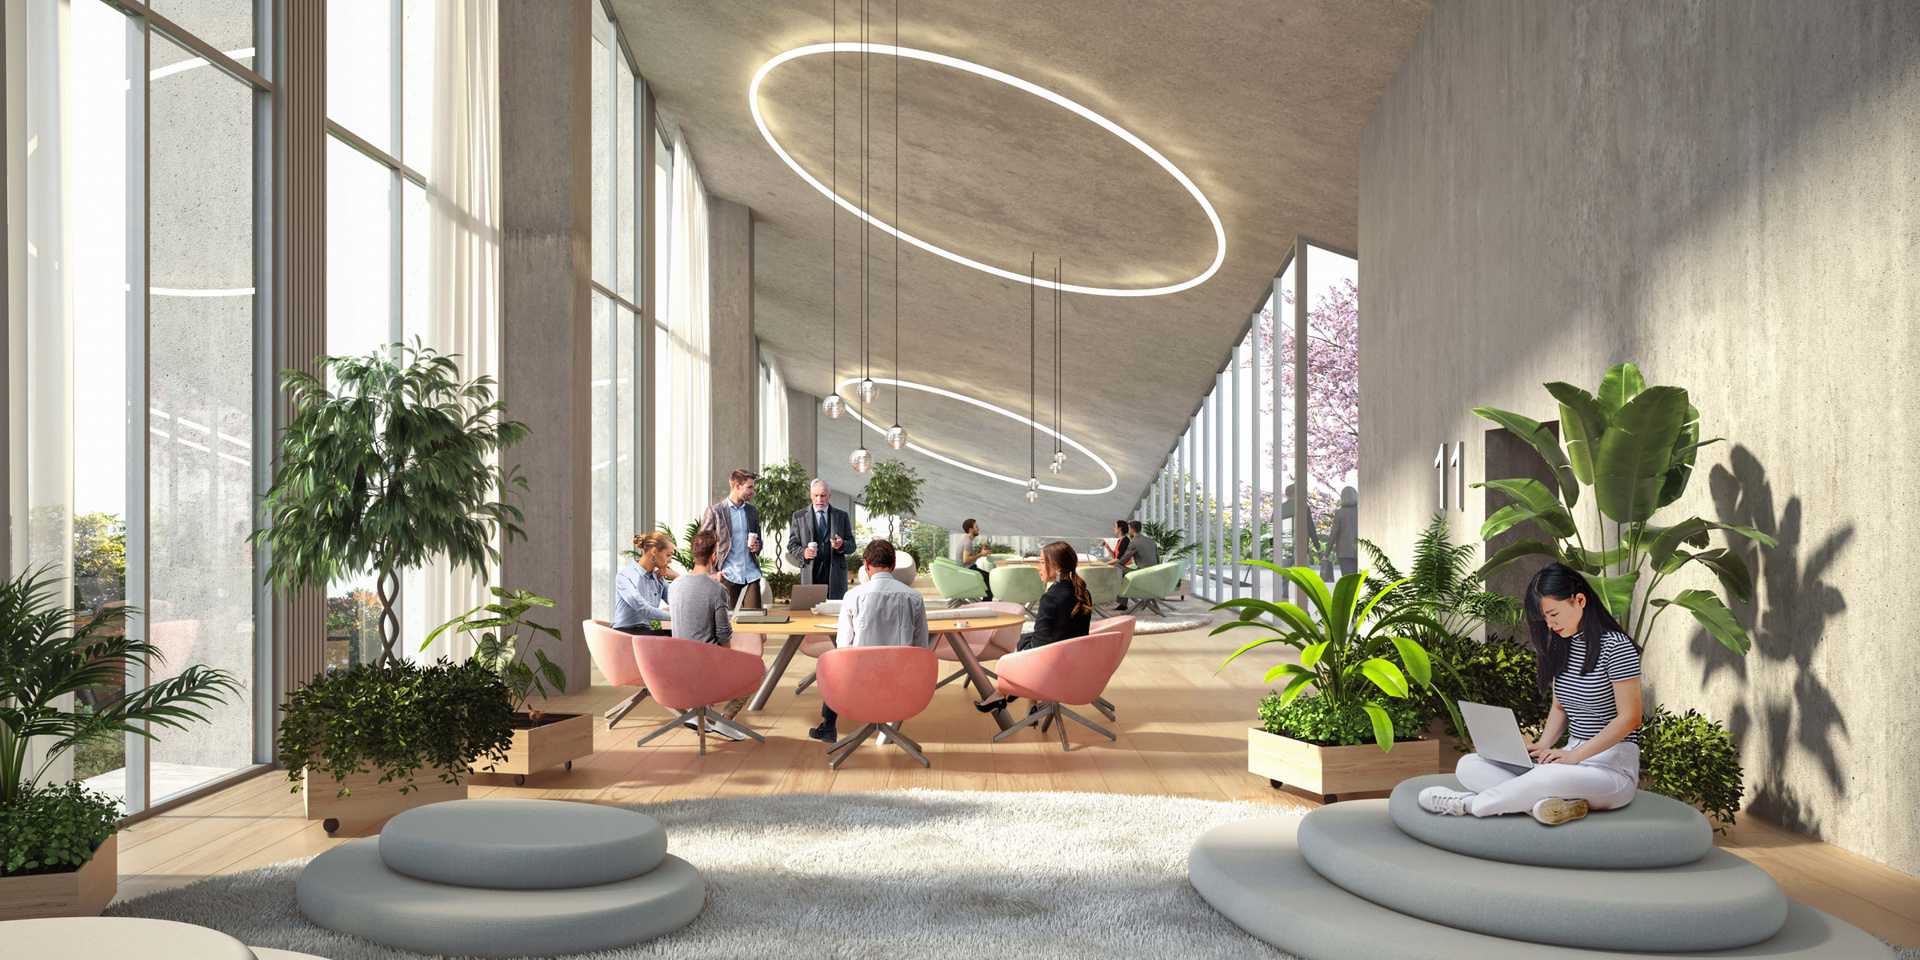 建筑内除了设计有开放式的会议空间和休息区，并且将种植大量植栽。